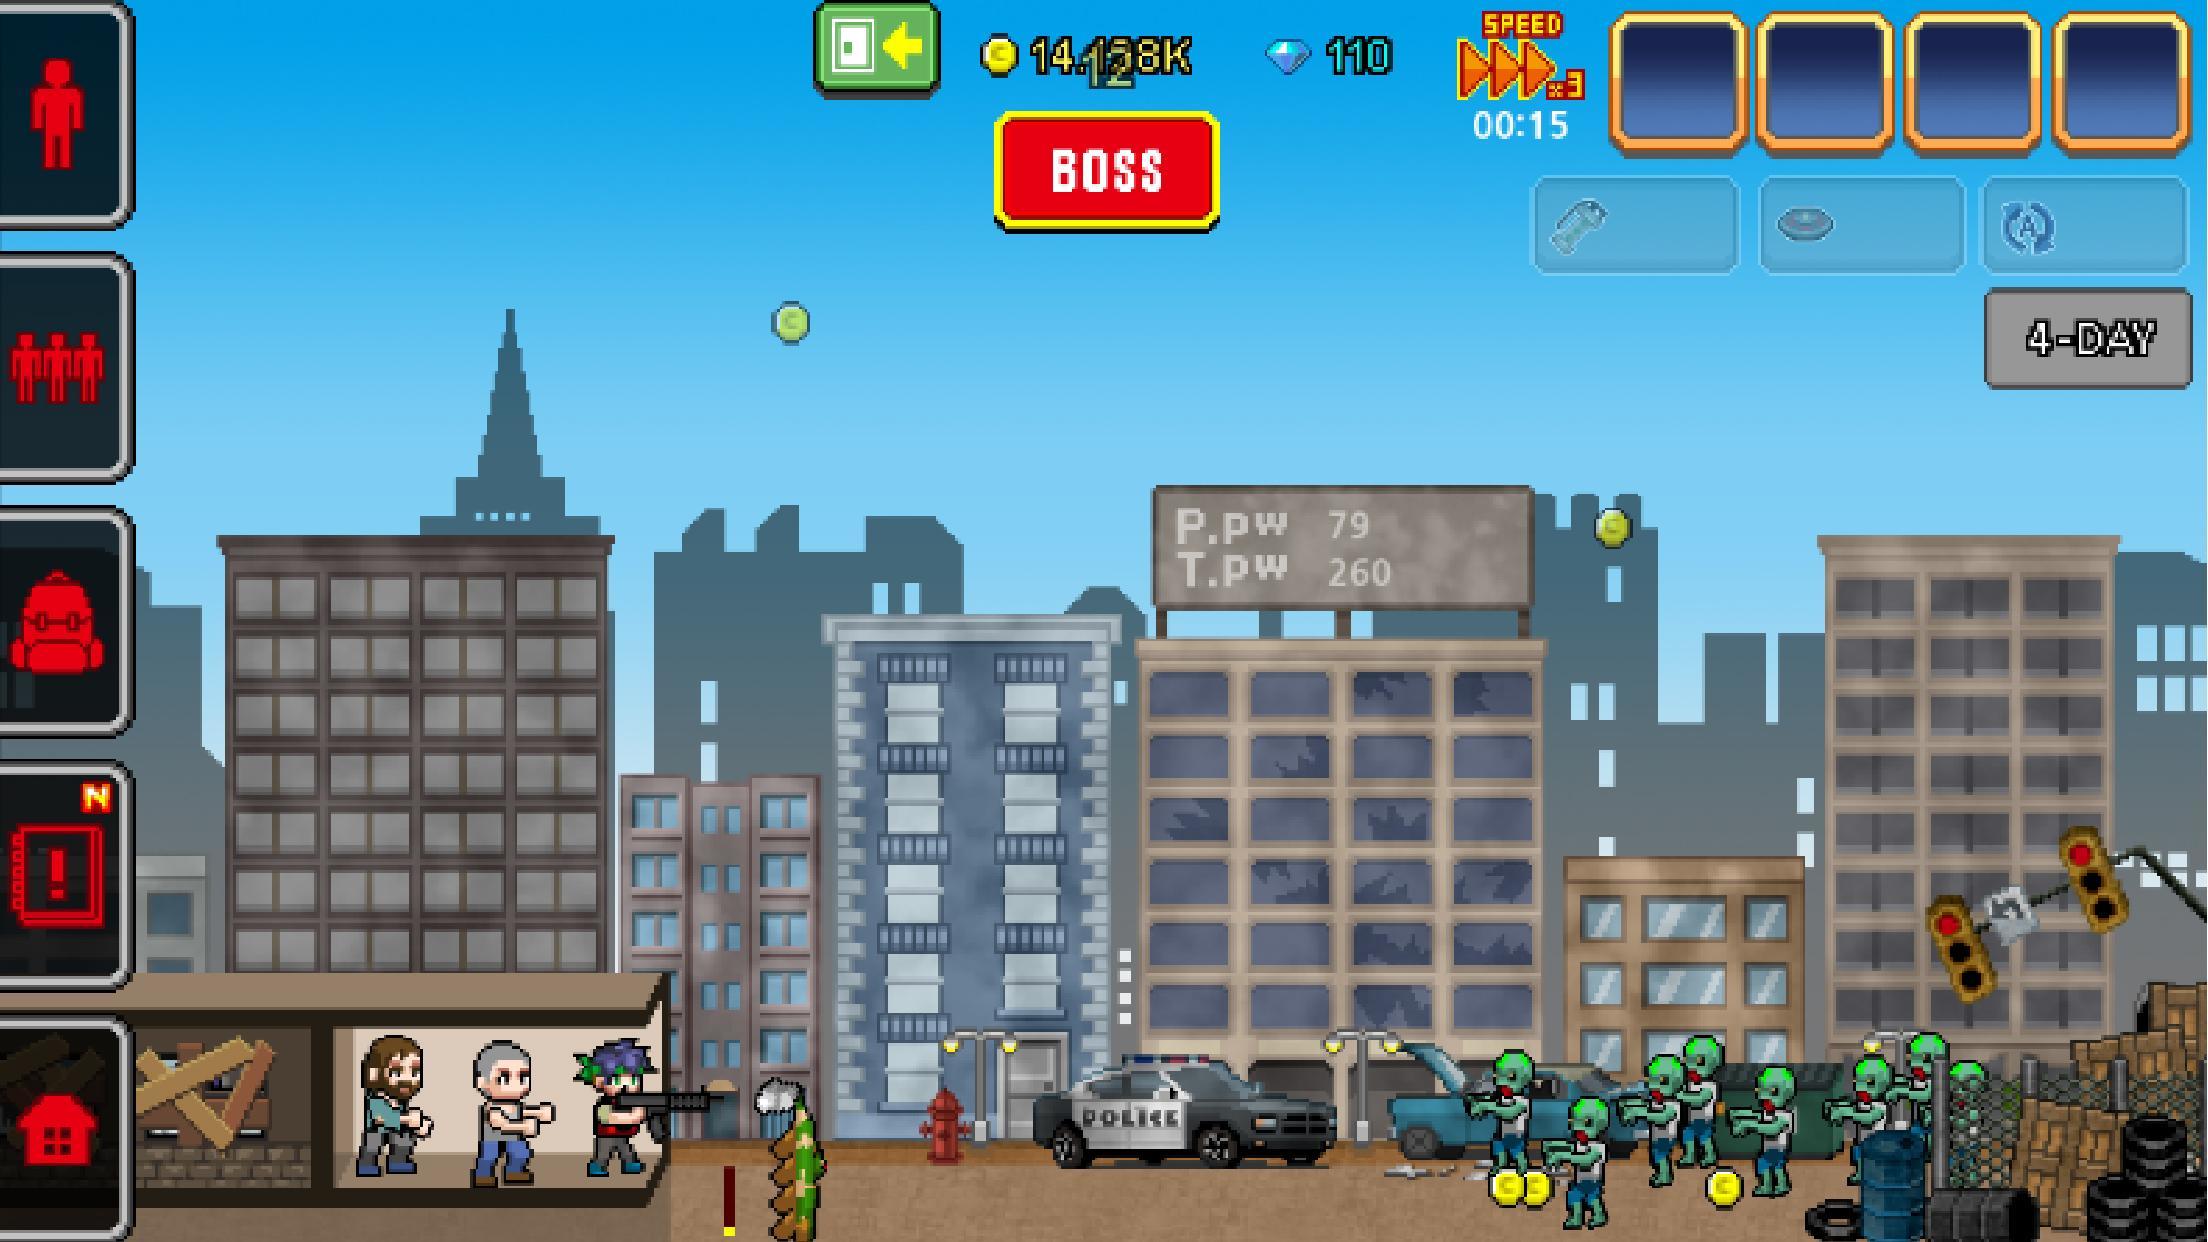 Screenshot 1 of 100 GIORNI - Invasione di zombi 1.0.1